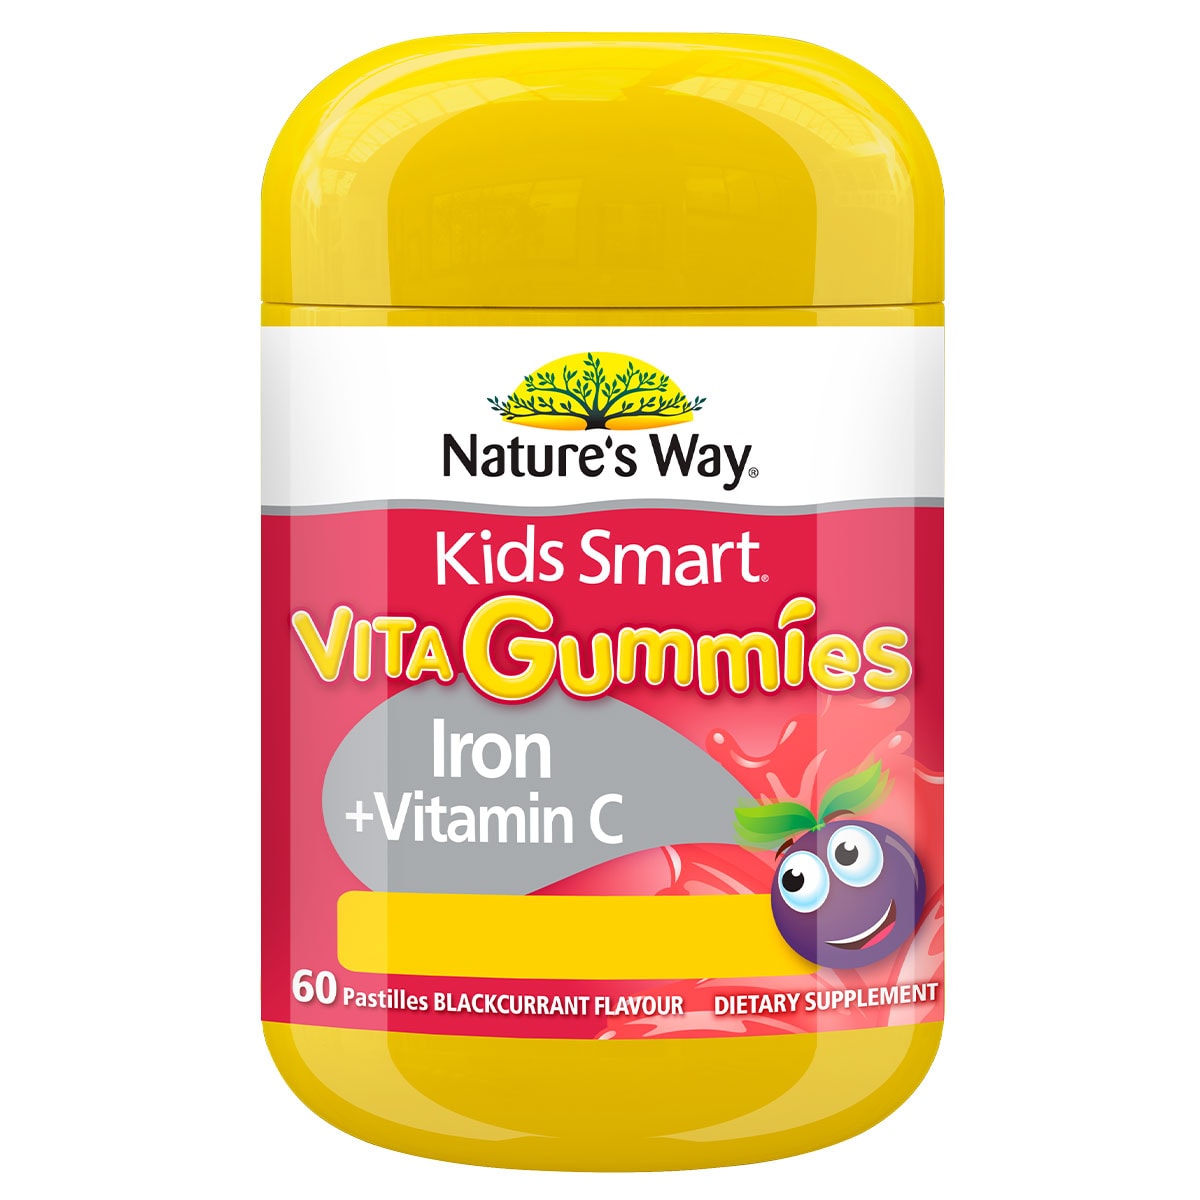 Natures Way Kids Smart Vita Gummies Iron + Vitamin C 60 Pack